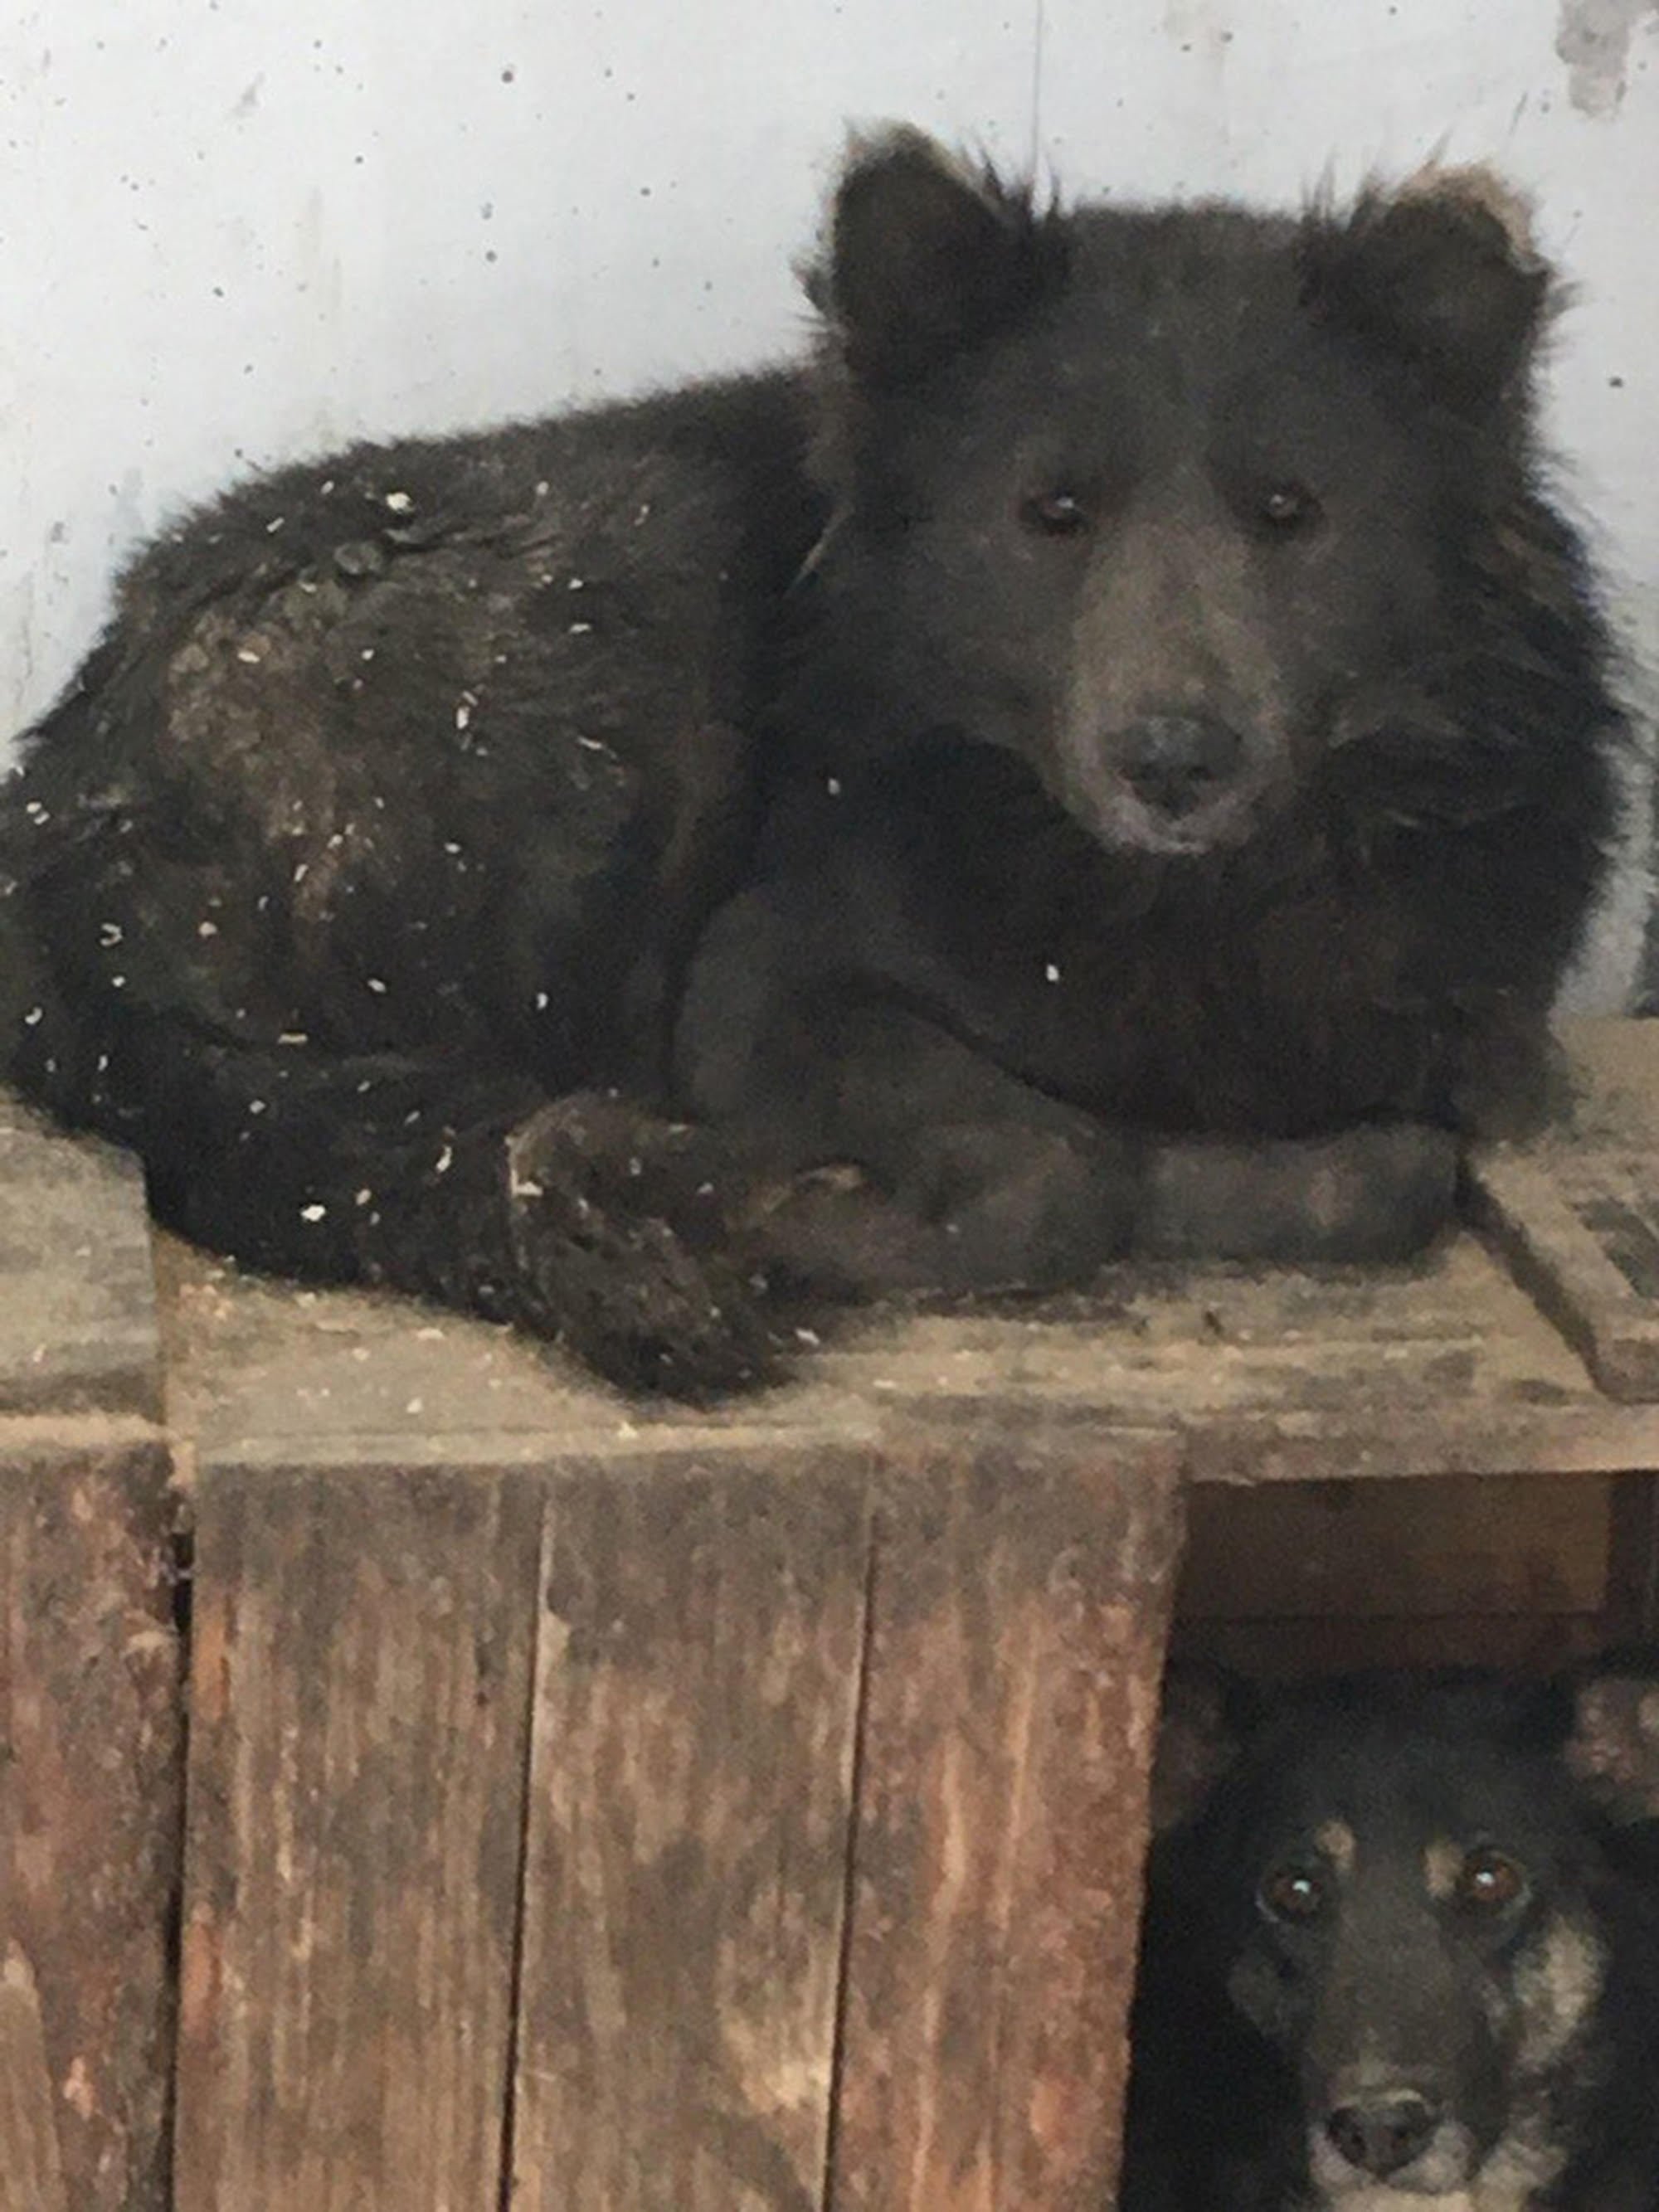 他們在俄羅斯森林發現一隻「熊頭狗身」的奇怪生物，馬上抓回去關起來請專家調查真相